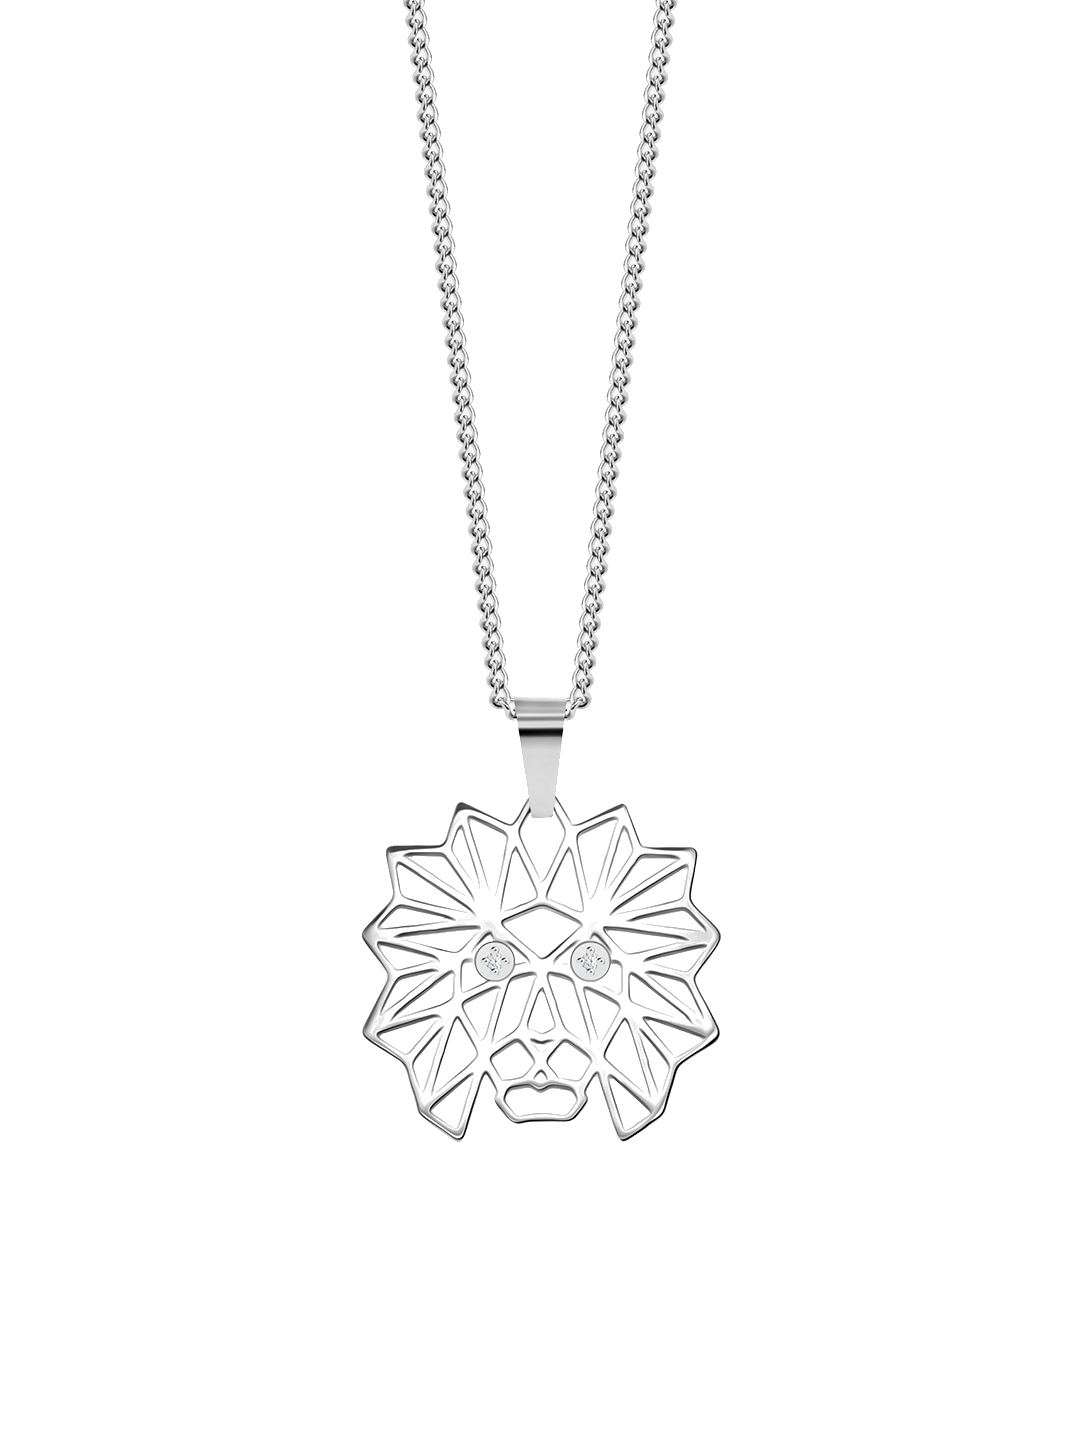 Preciosa Štýlový oceľový náhrdelník Origami Lion s kubickou zirkóniou Preciosa 7442 00